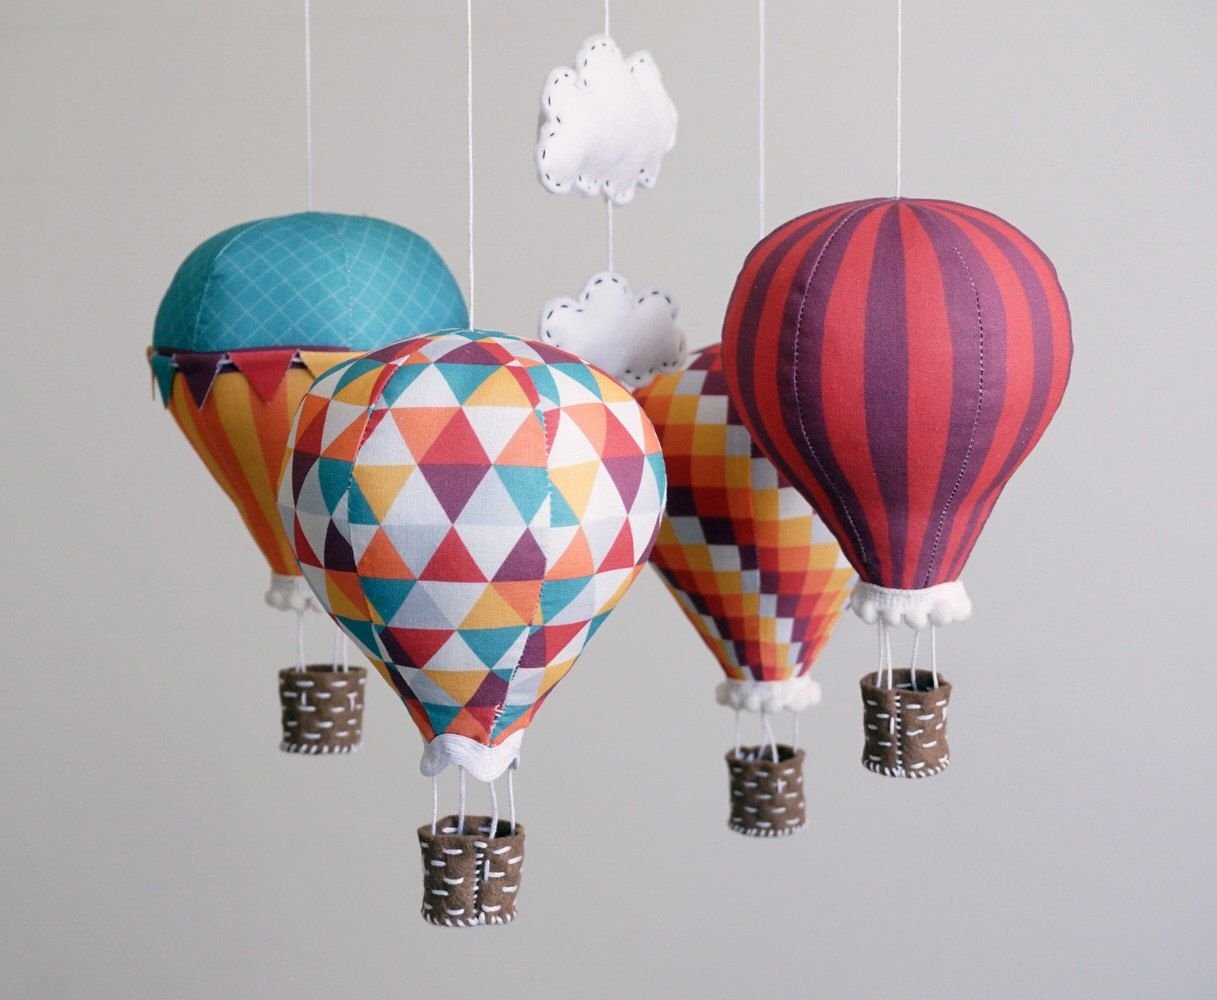 Как делают воздушные шары. Монгольфьер воздушный шар. Декоративный воздушный шар. Корзинка для воздушного шара. Воздушный шар из ткани.